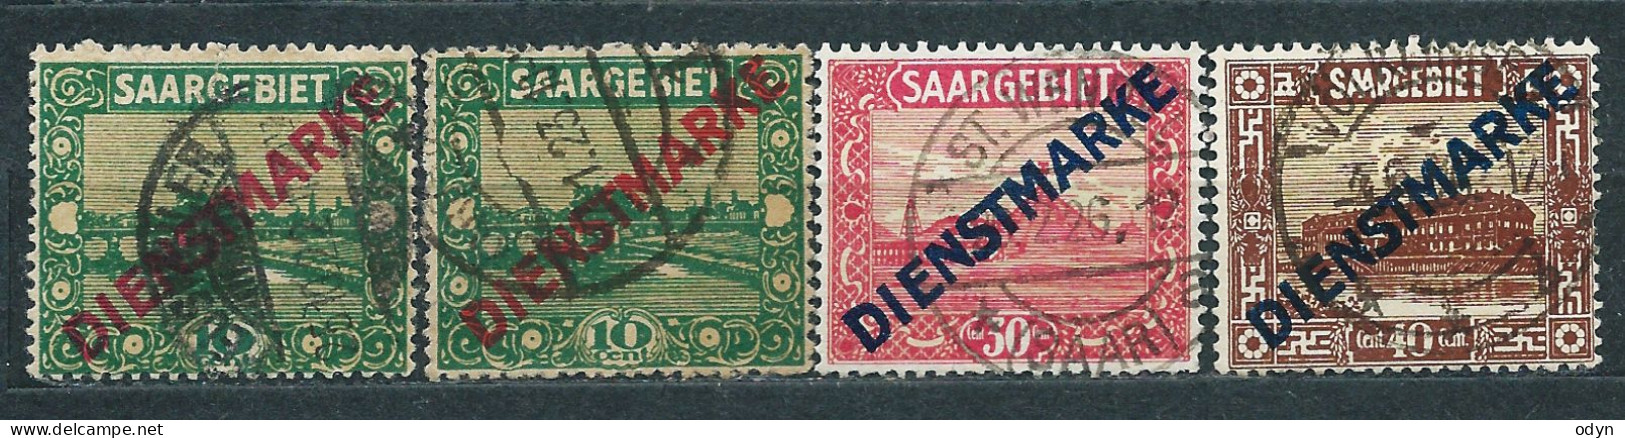 Saargebiet Dienstmarken 1922, Complete Set MiNr 1-11 - Unused MH * + 4 Stamps Used - Dienstmarken